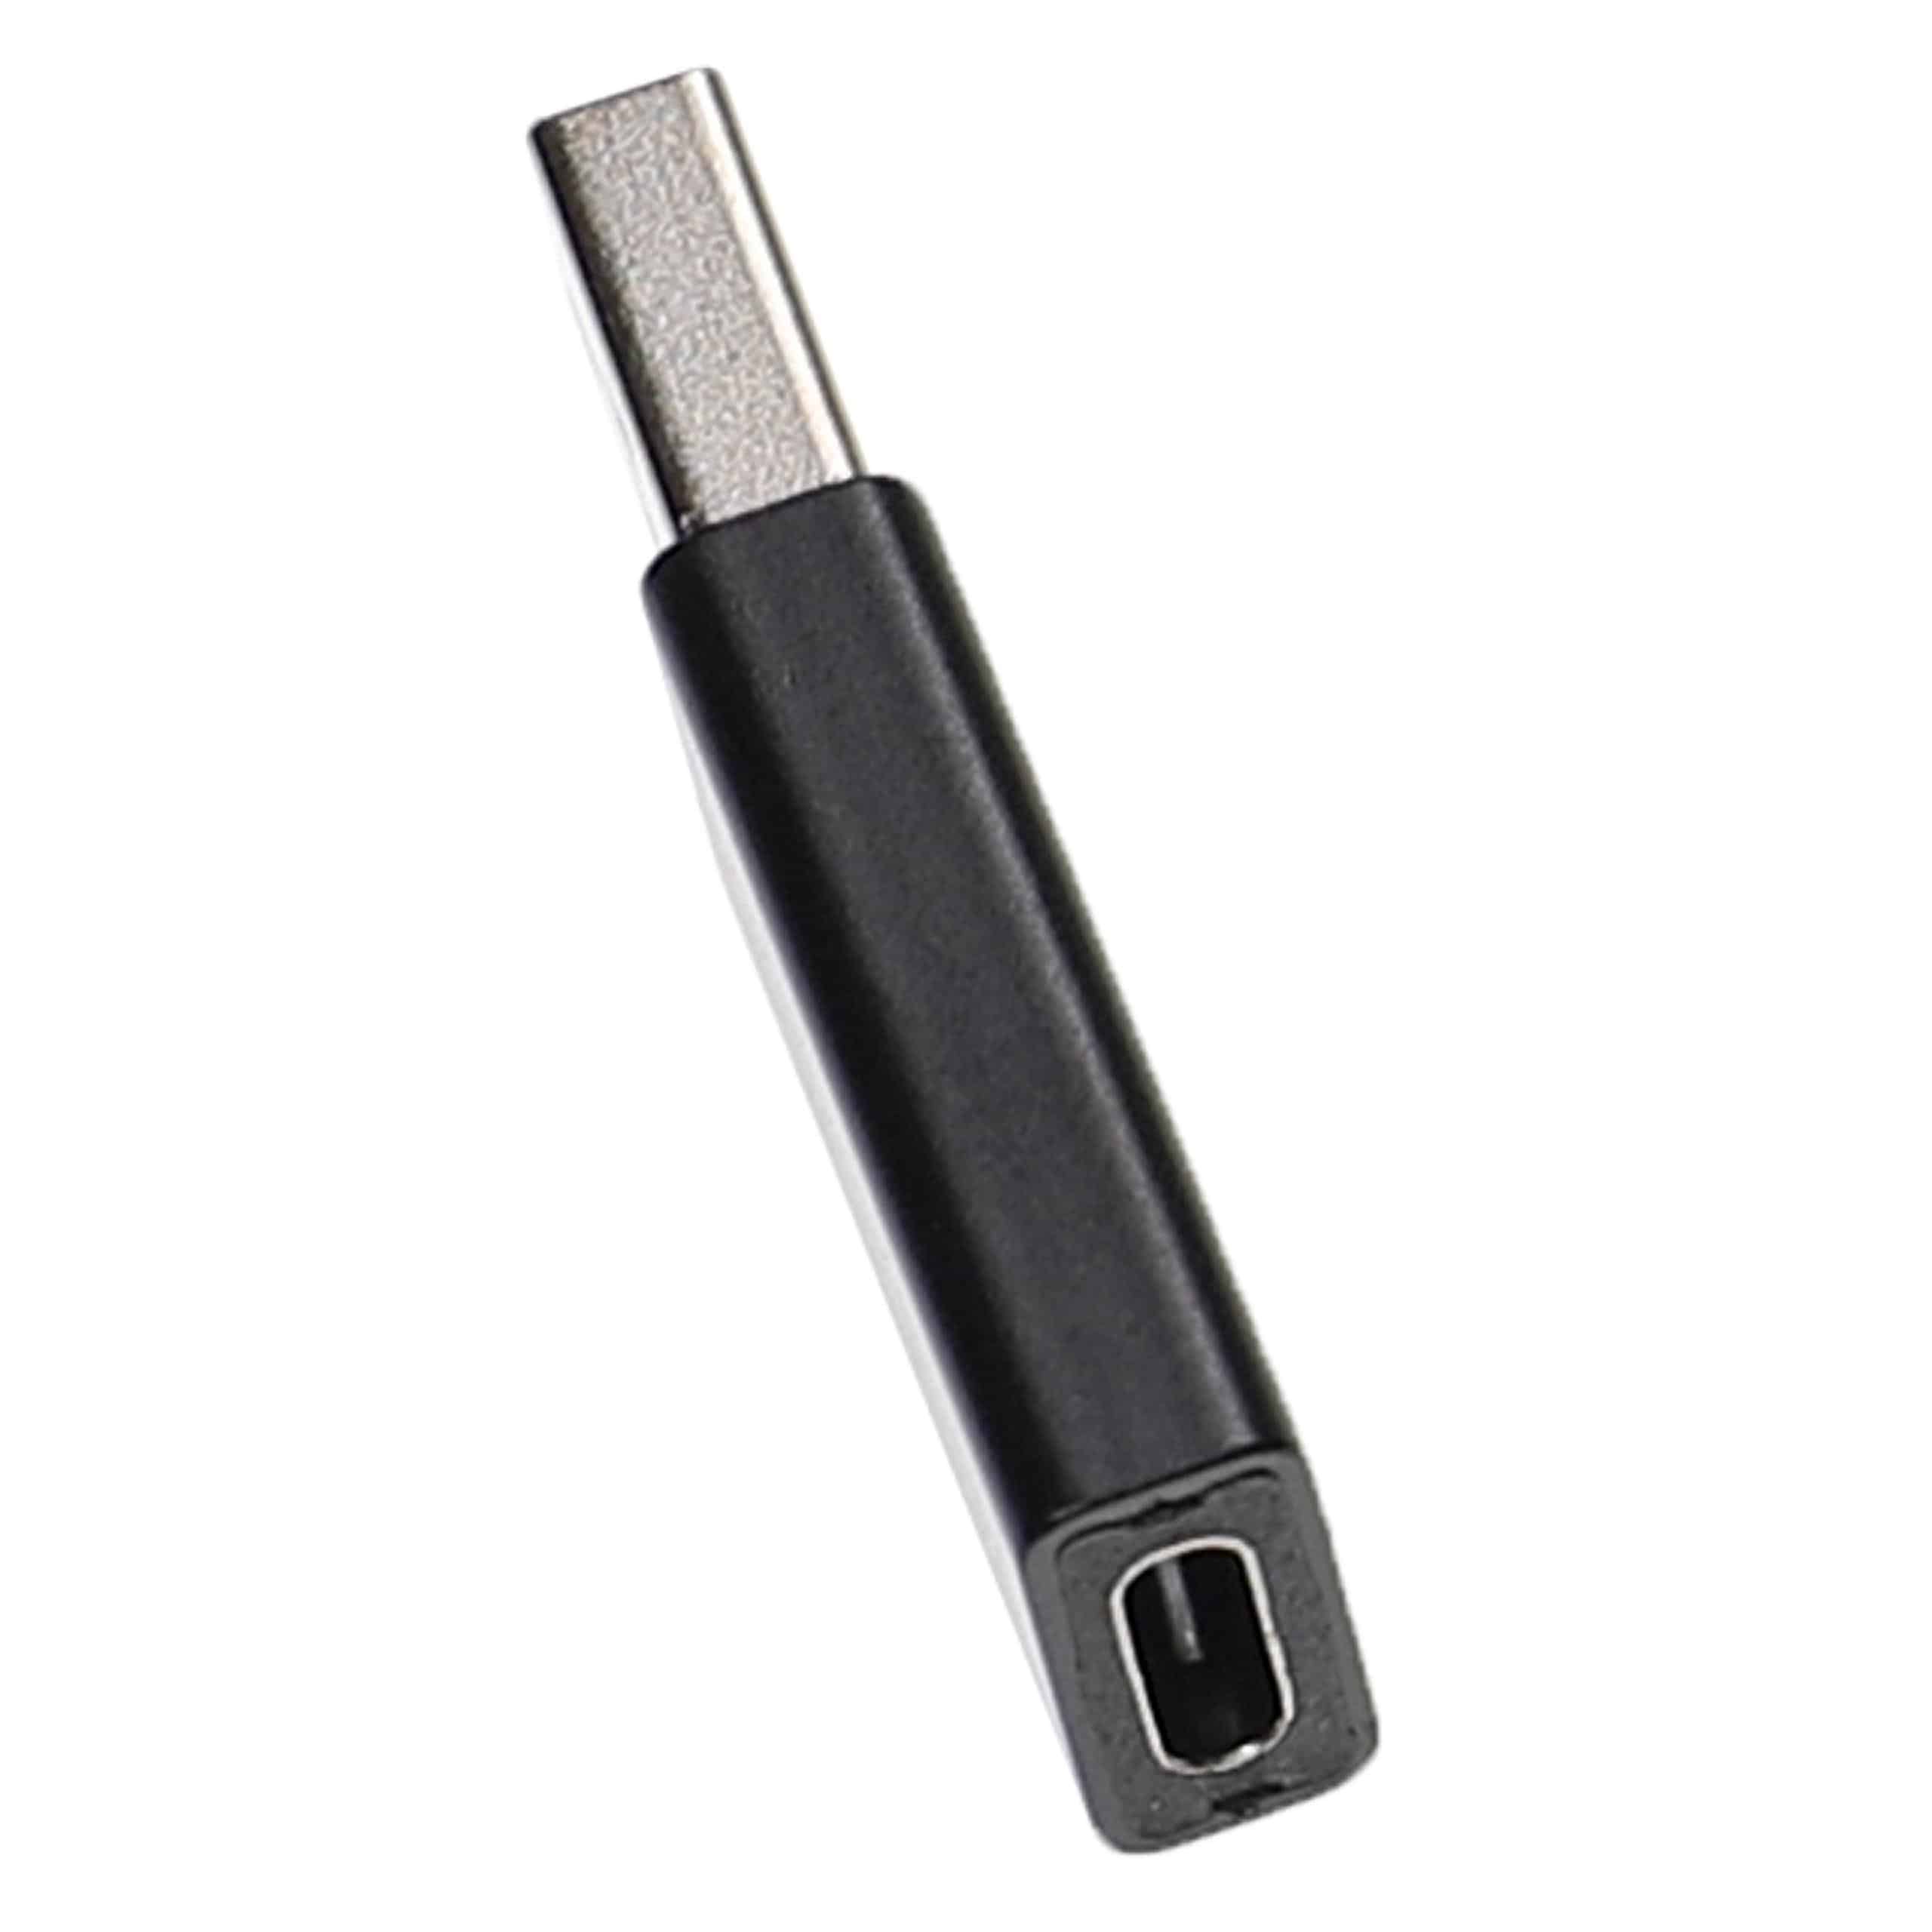 3x Adapter USB C (ż) na USB 3.0 (m) do smartfona, tabletu, laptopa - Adapter USB